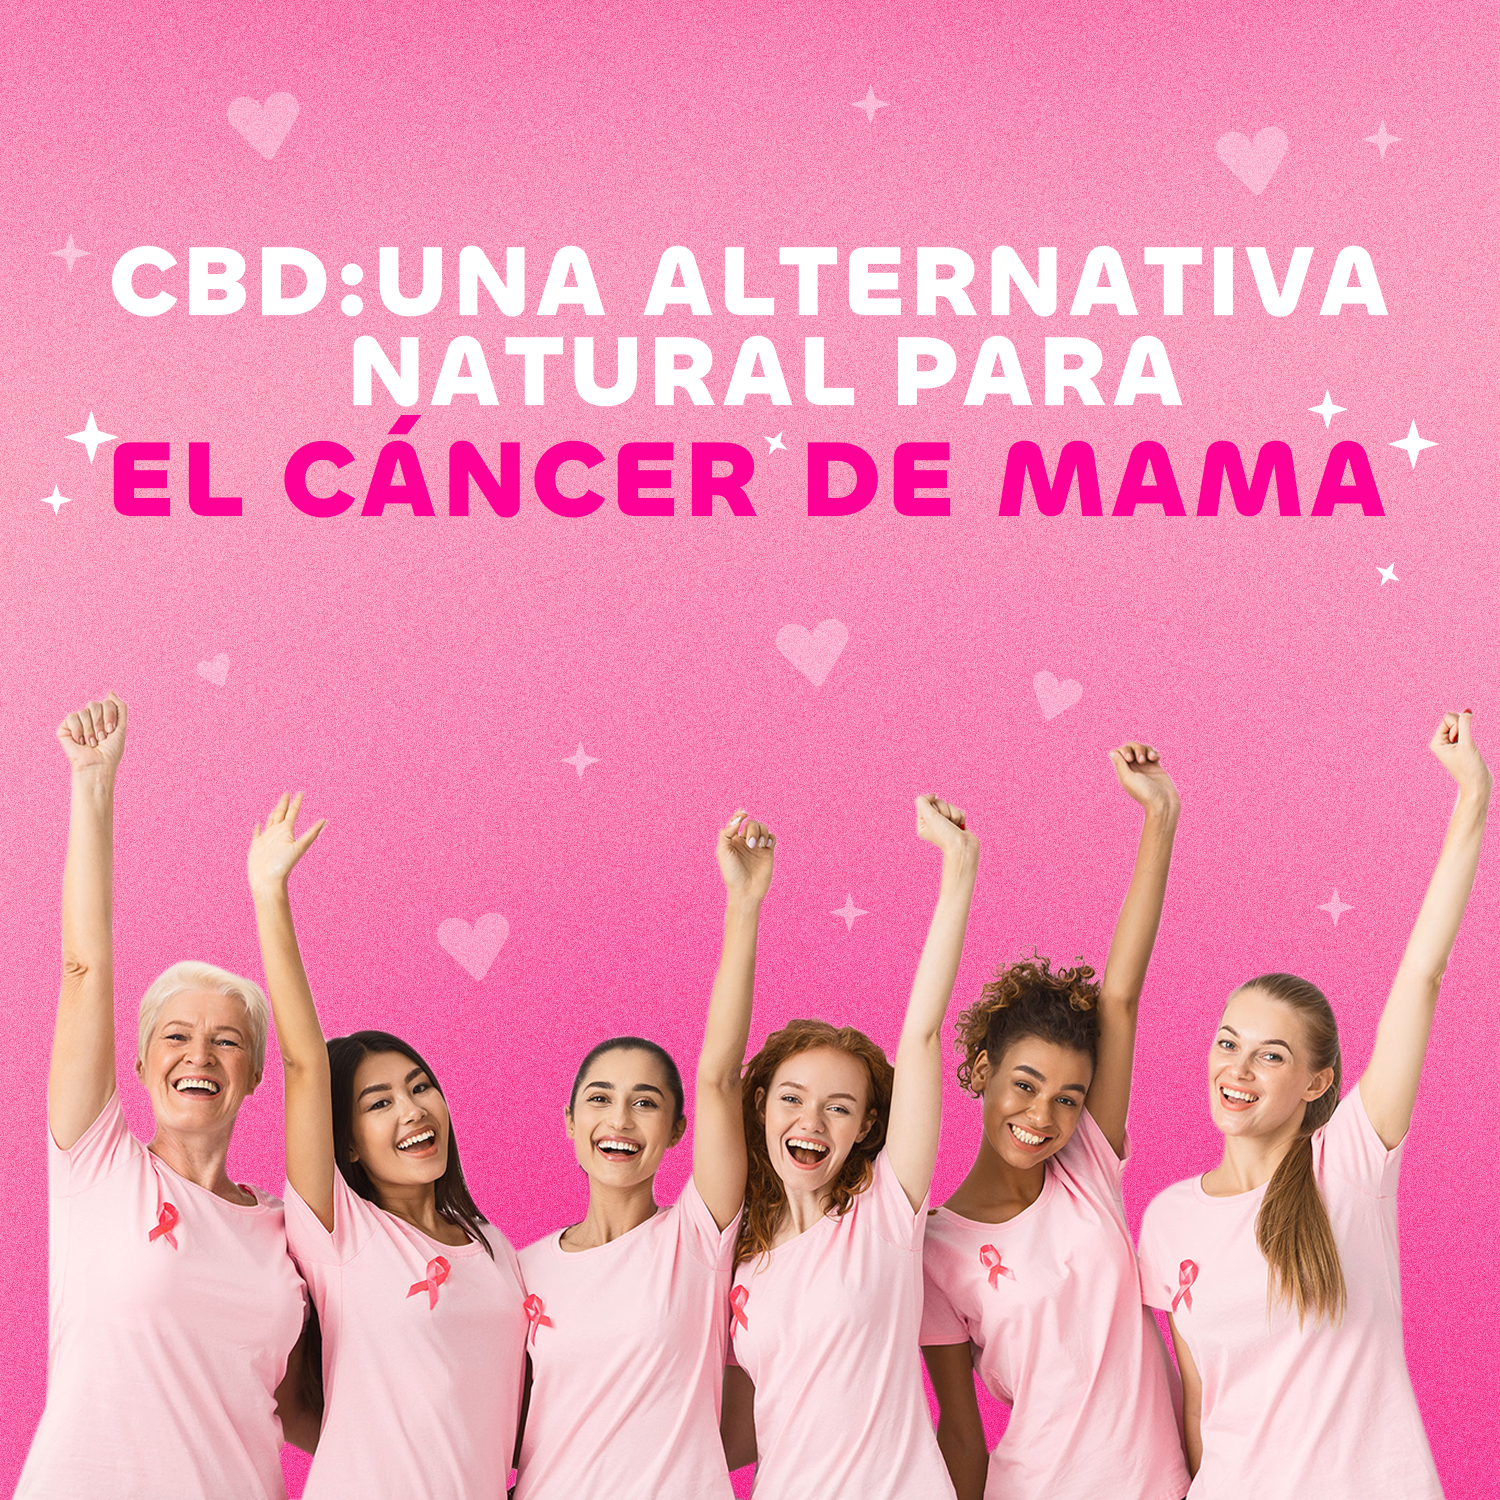 CBD: Una alternativa natural para el Cáncer de mama